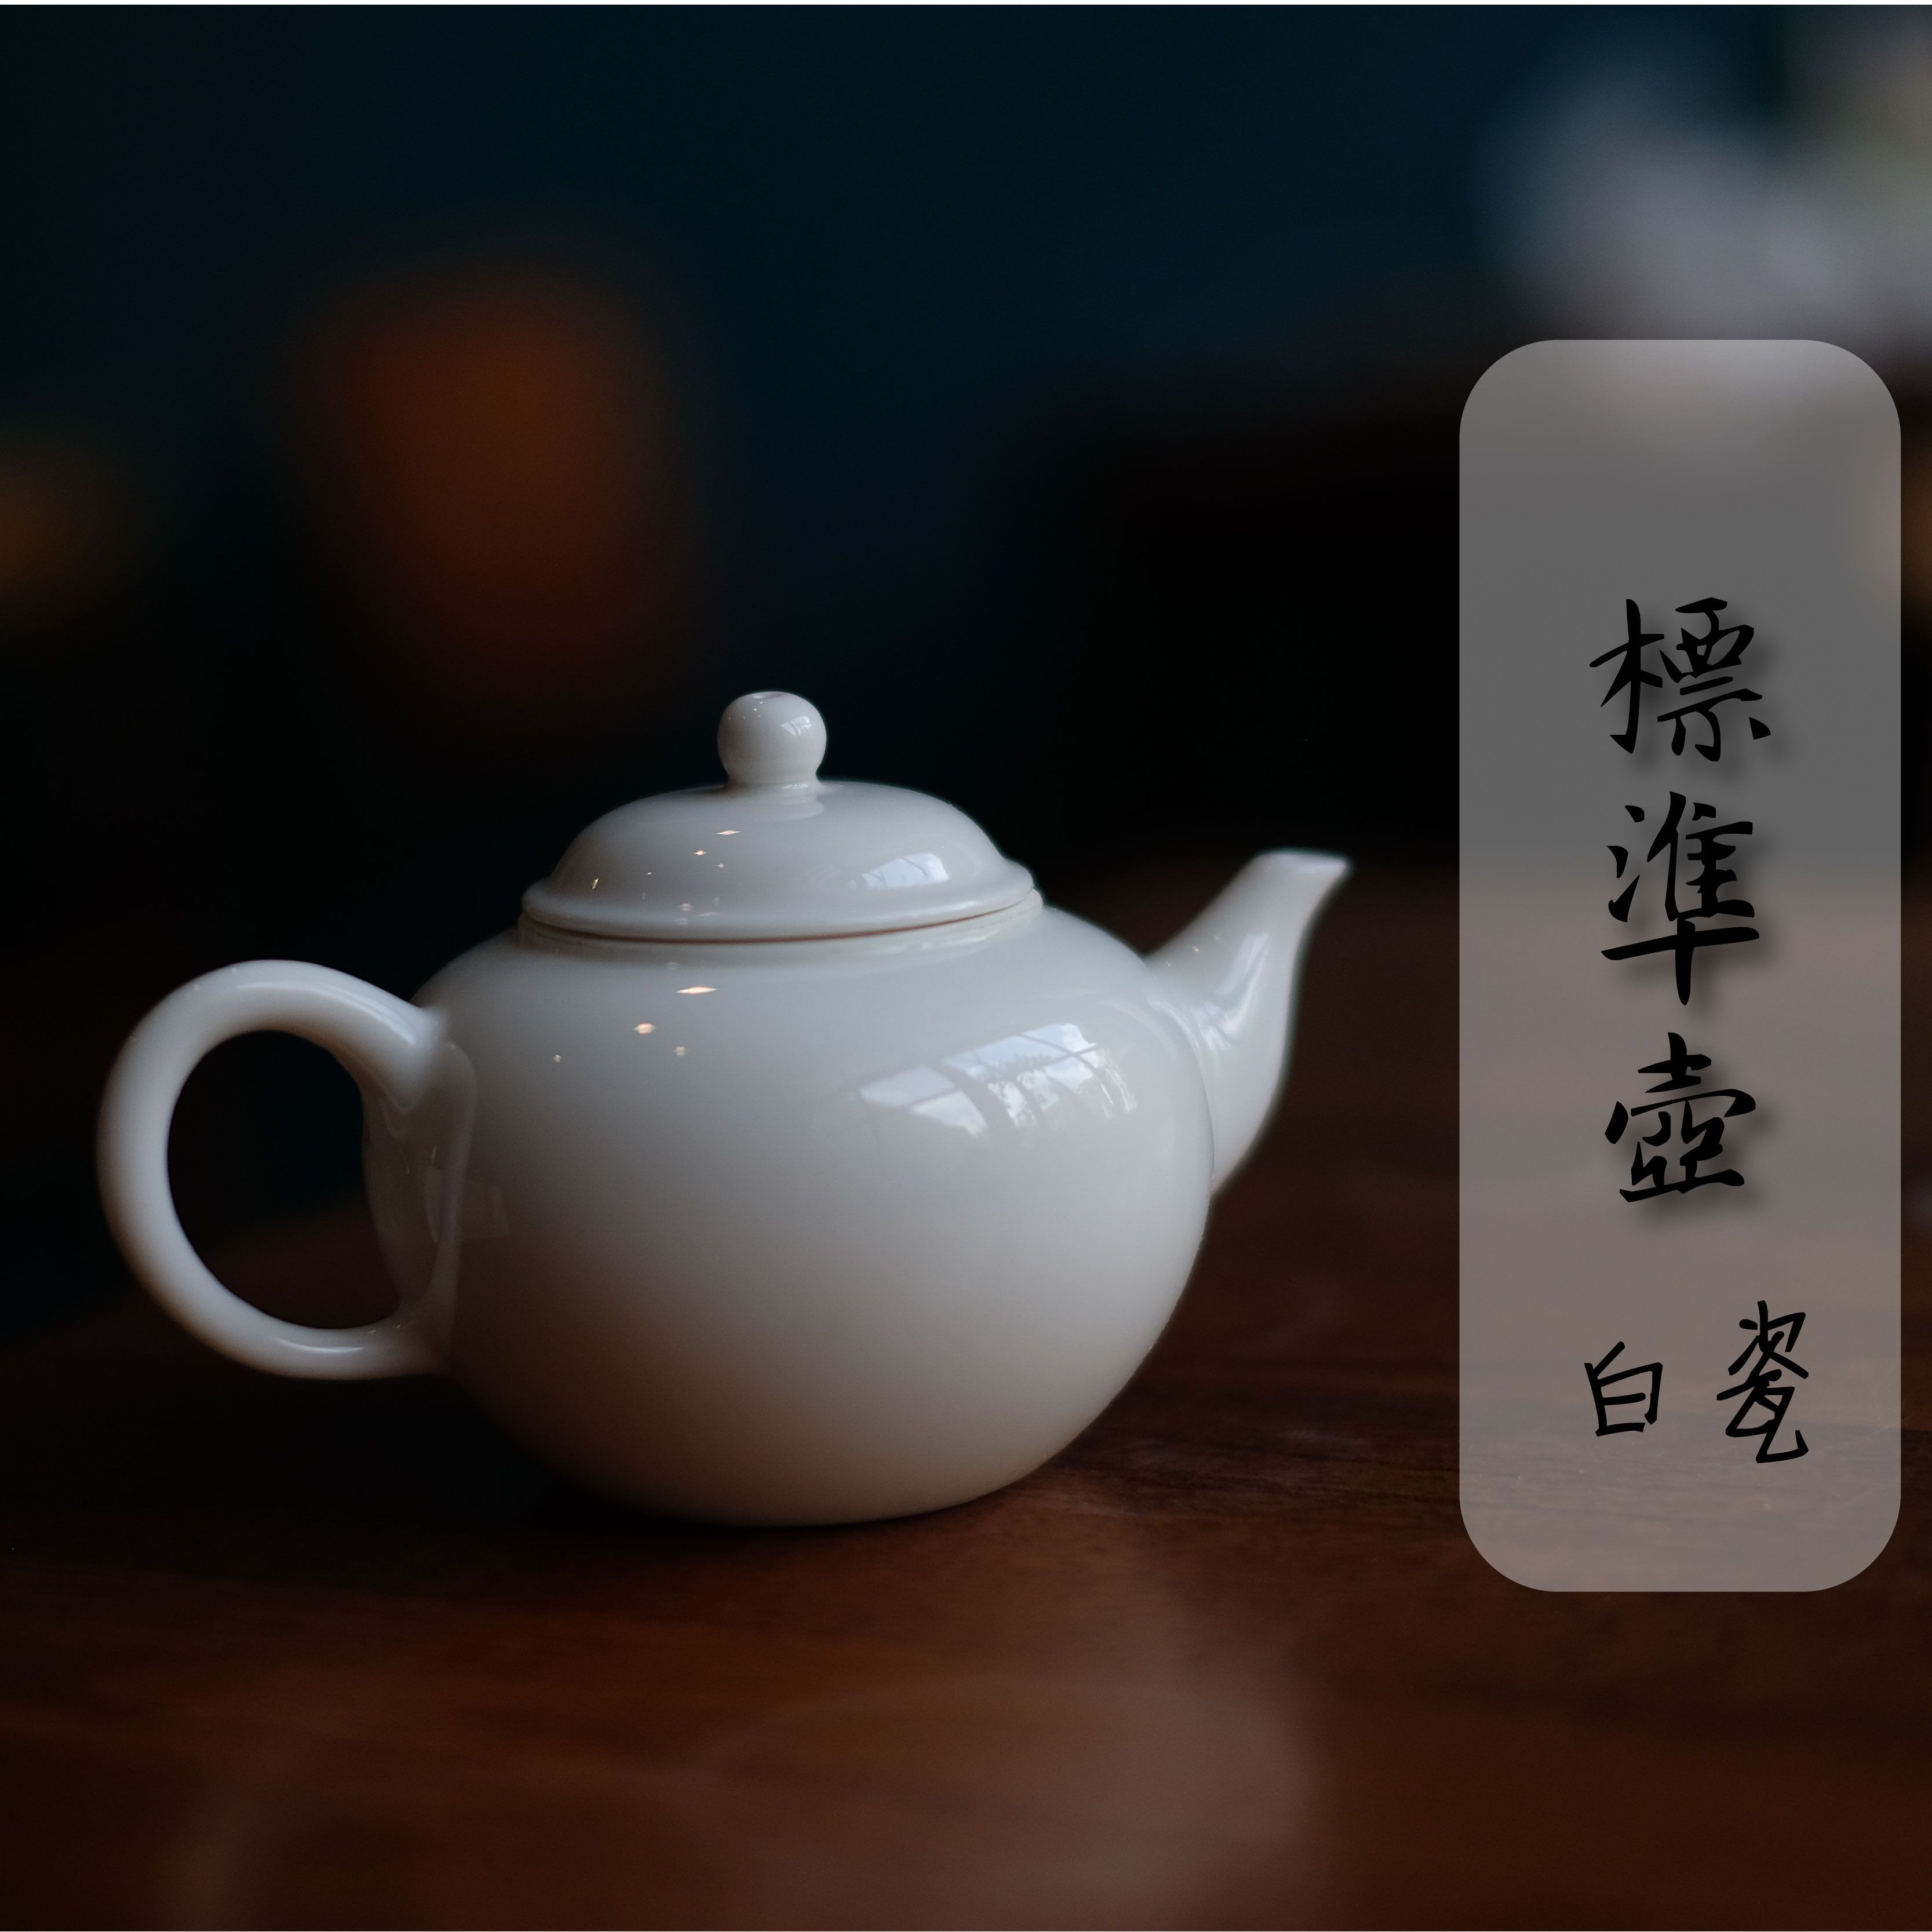  【品茗茶丘好】標準壺 適合初學者 茶壺 茶具 白瓷 瓷壺 鴿嘴壺 台製茶壺 台灣製 標準